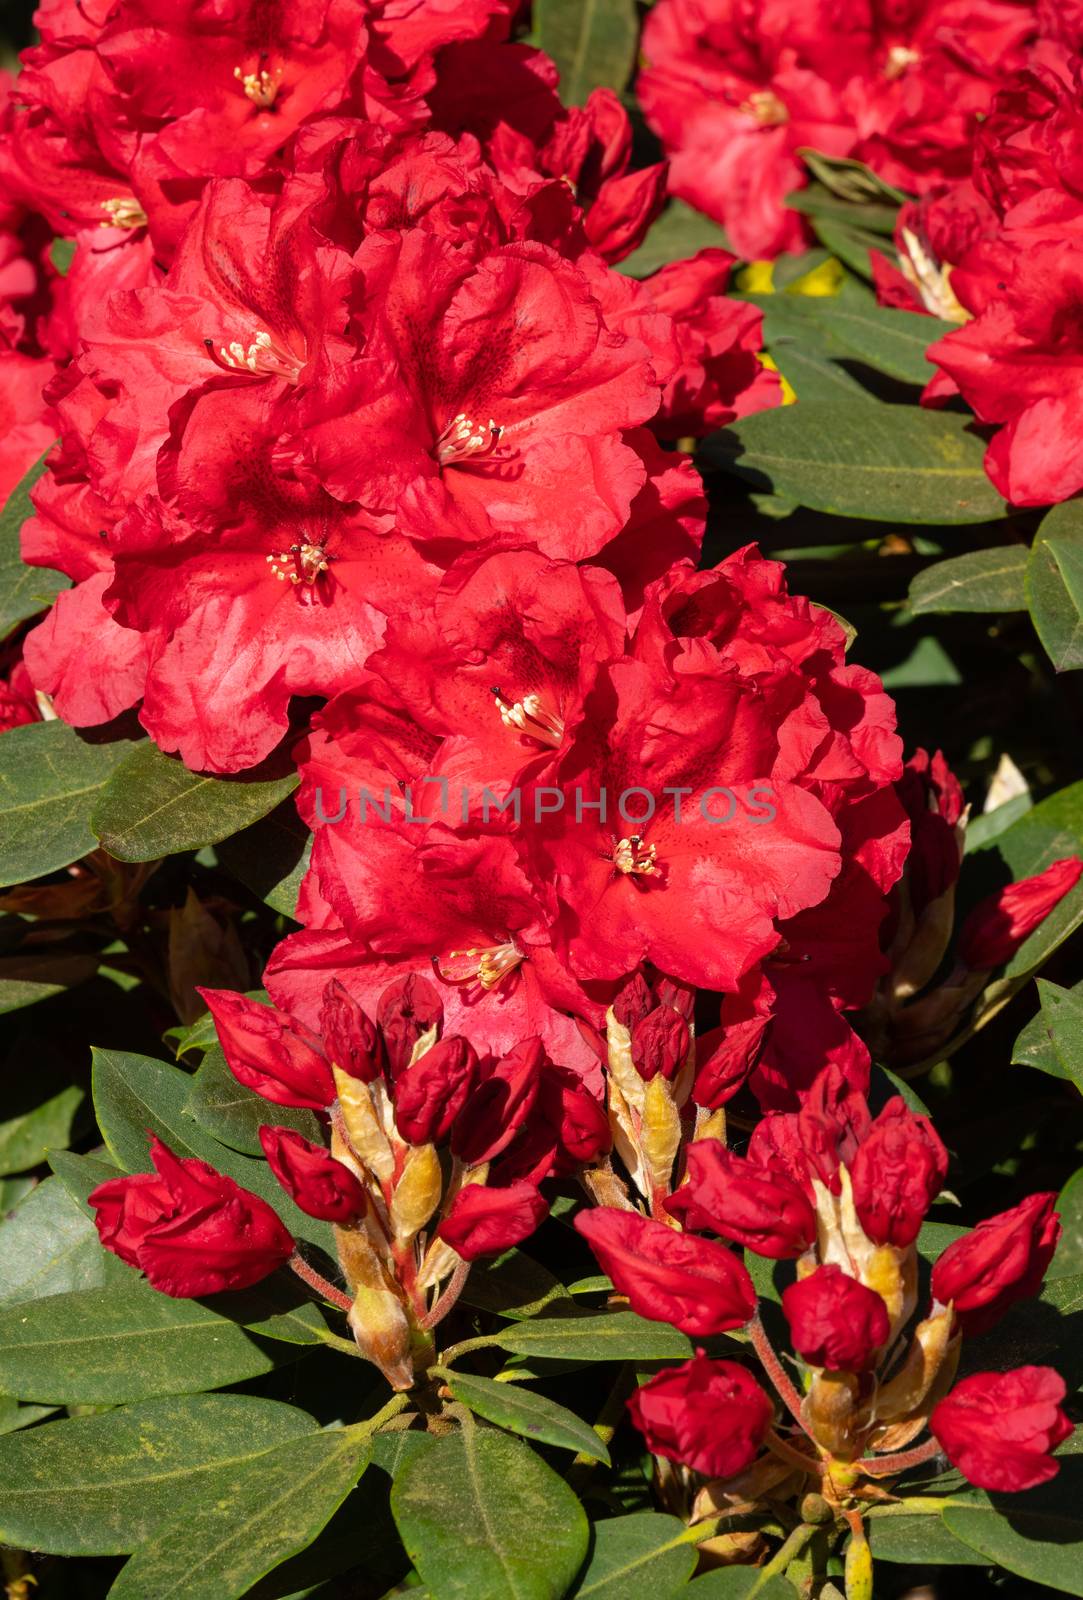 Rhododendron Hybrid Rabatz by alfotokunst